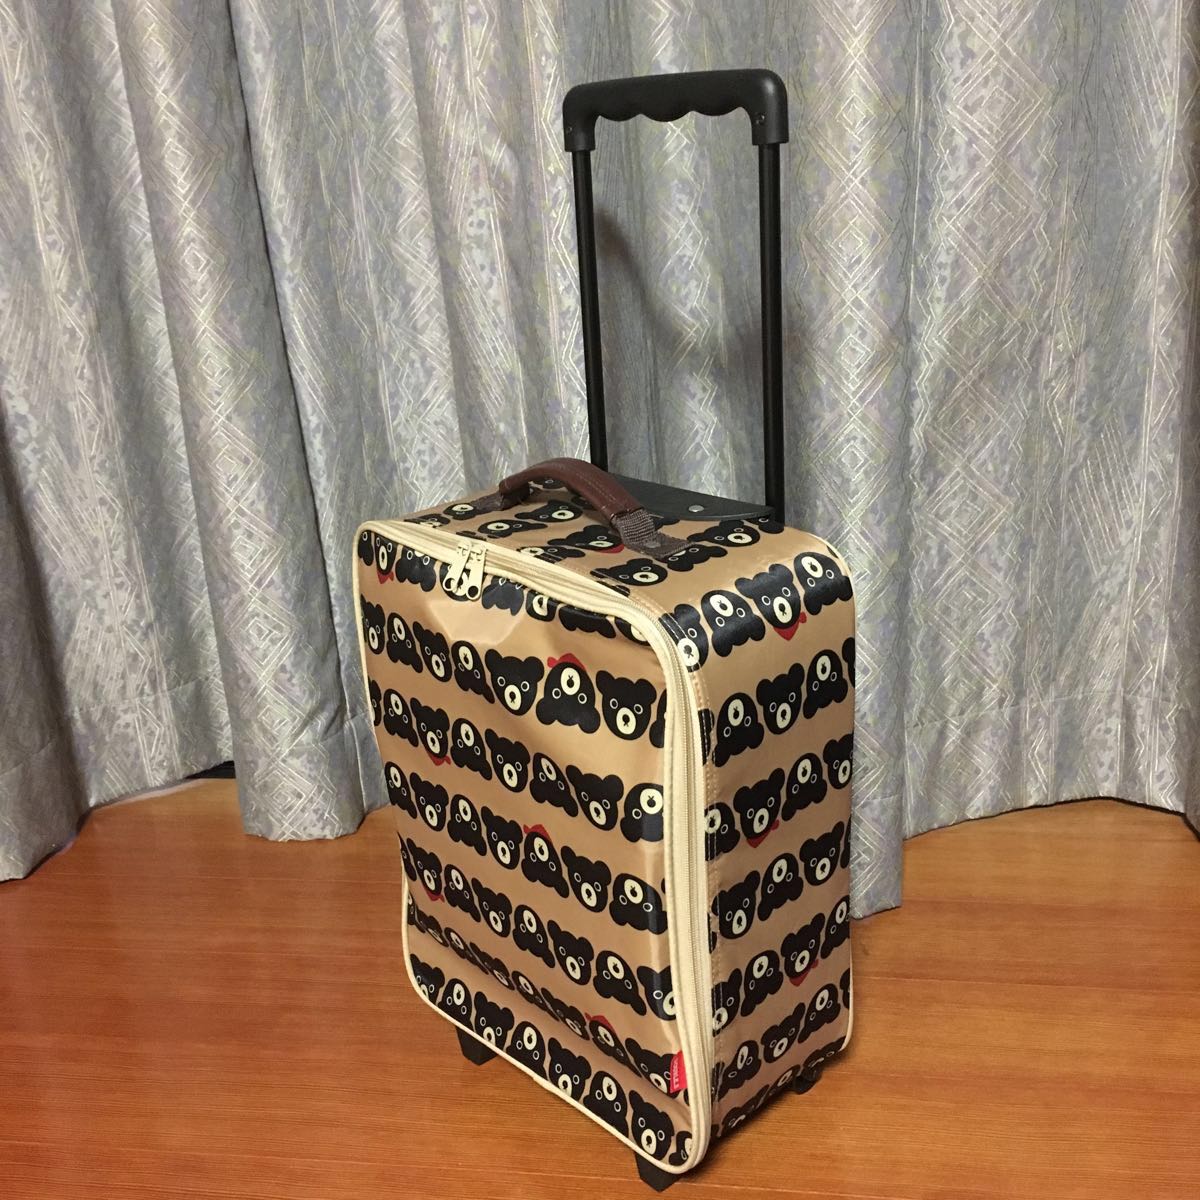  новый товар Miki House Carry кейс дорожная сумка дорожная сумка Novelty не продается путешествие кейс 